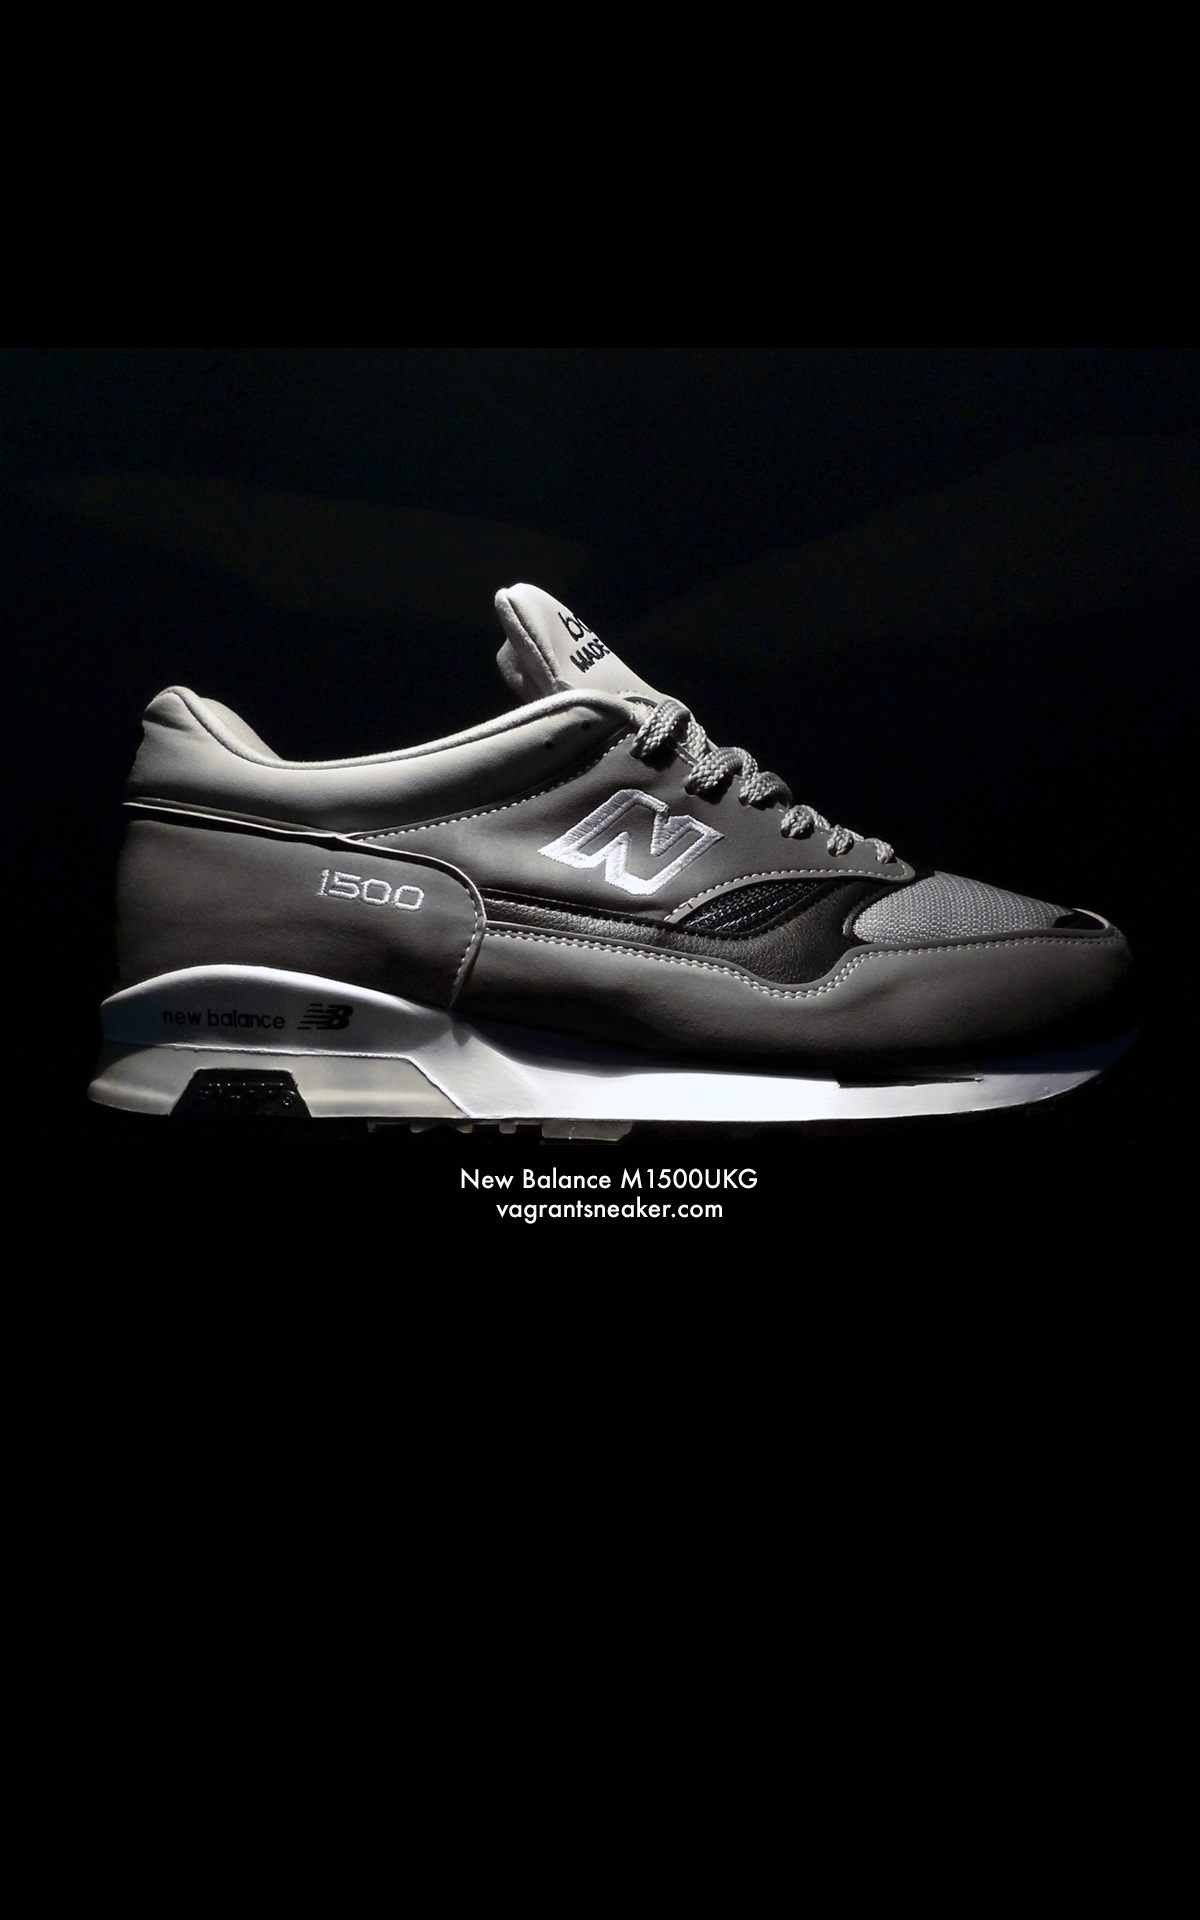 Wallpaper New Balance M1500ukg Og Retro 10 Wp 01 Vagrant Sneaker